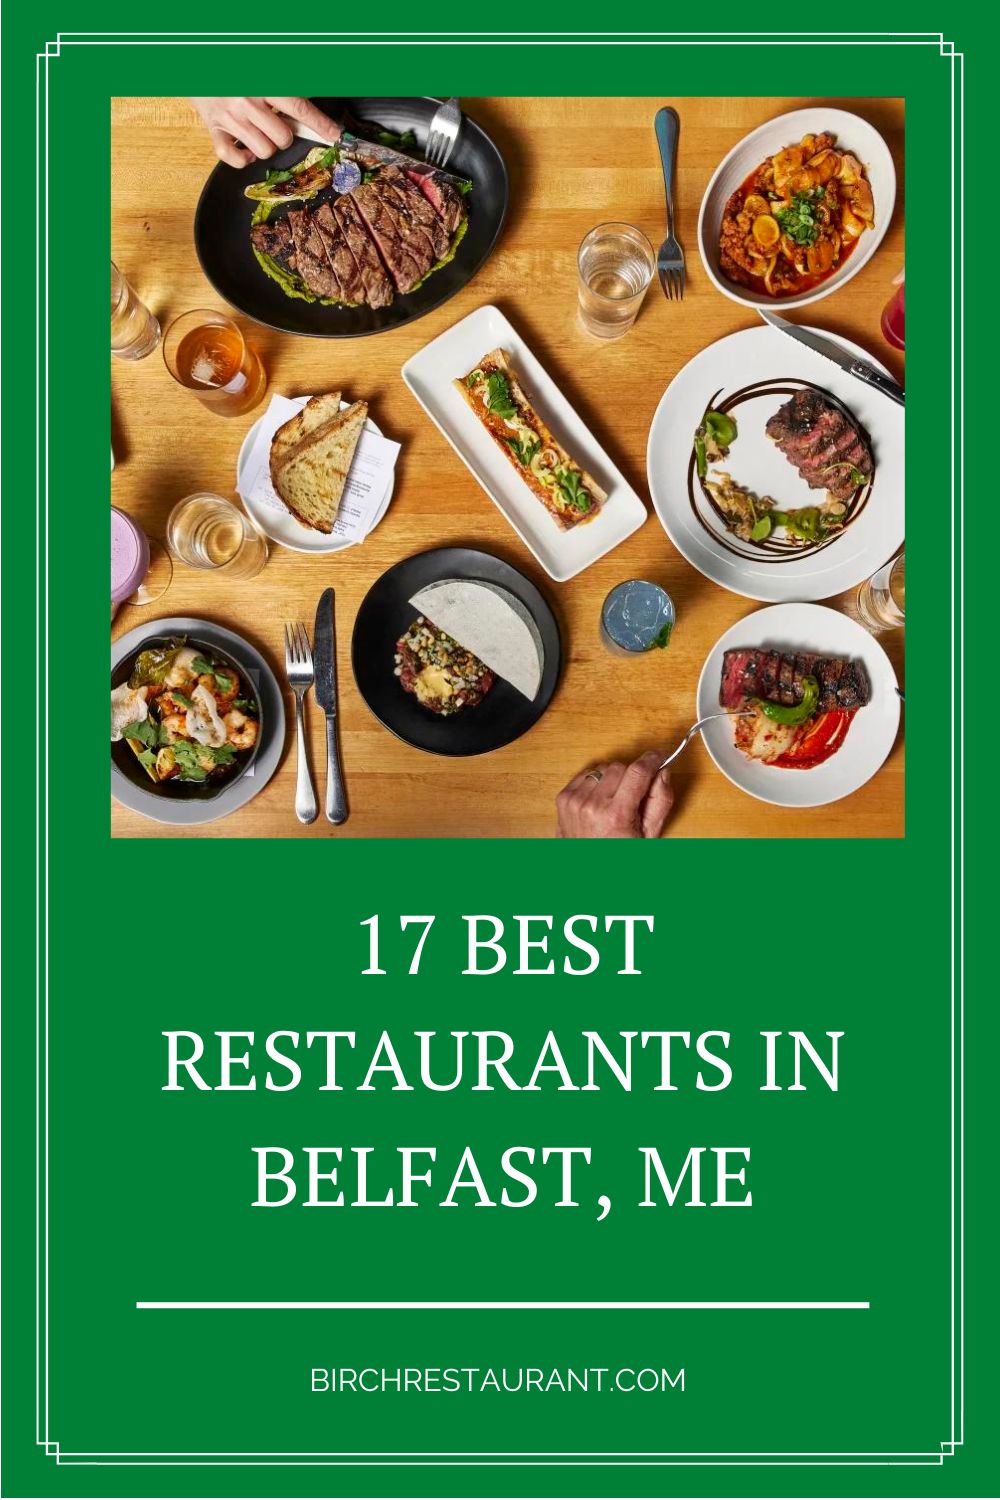 Best Restaurants in Belfast